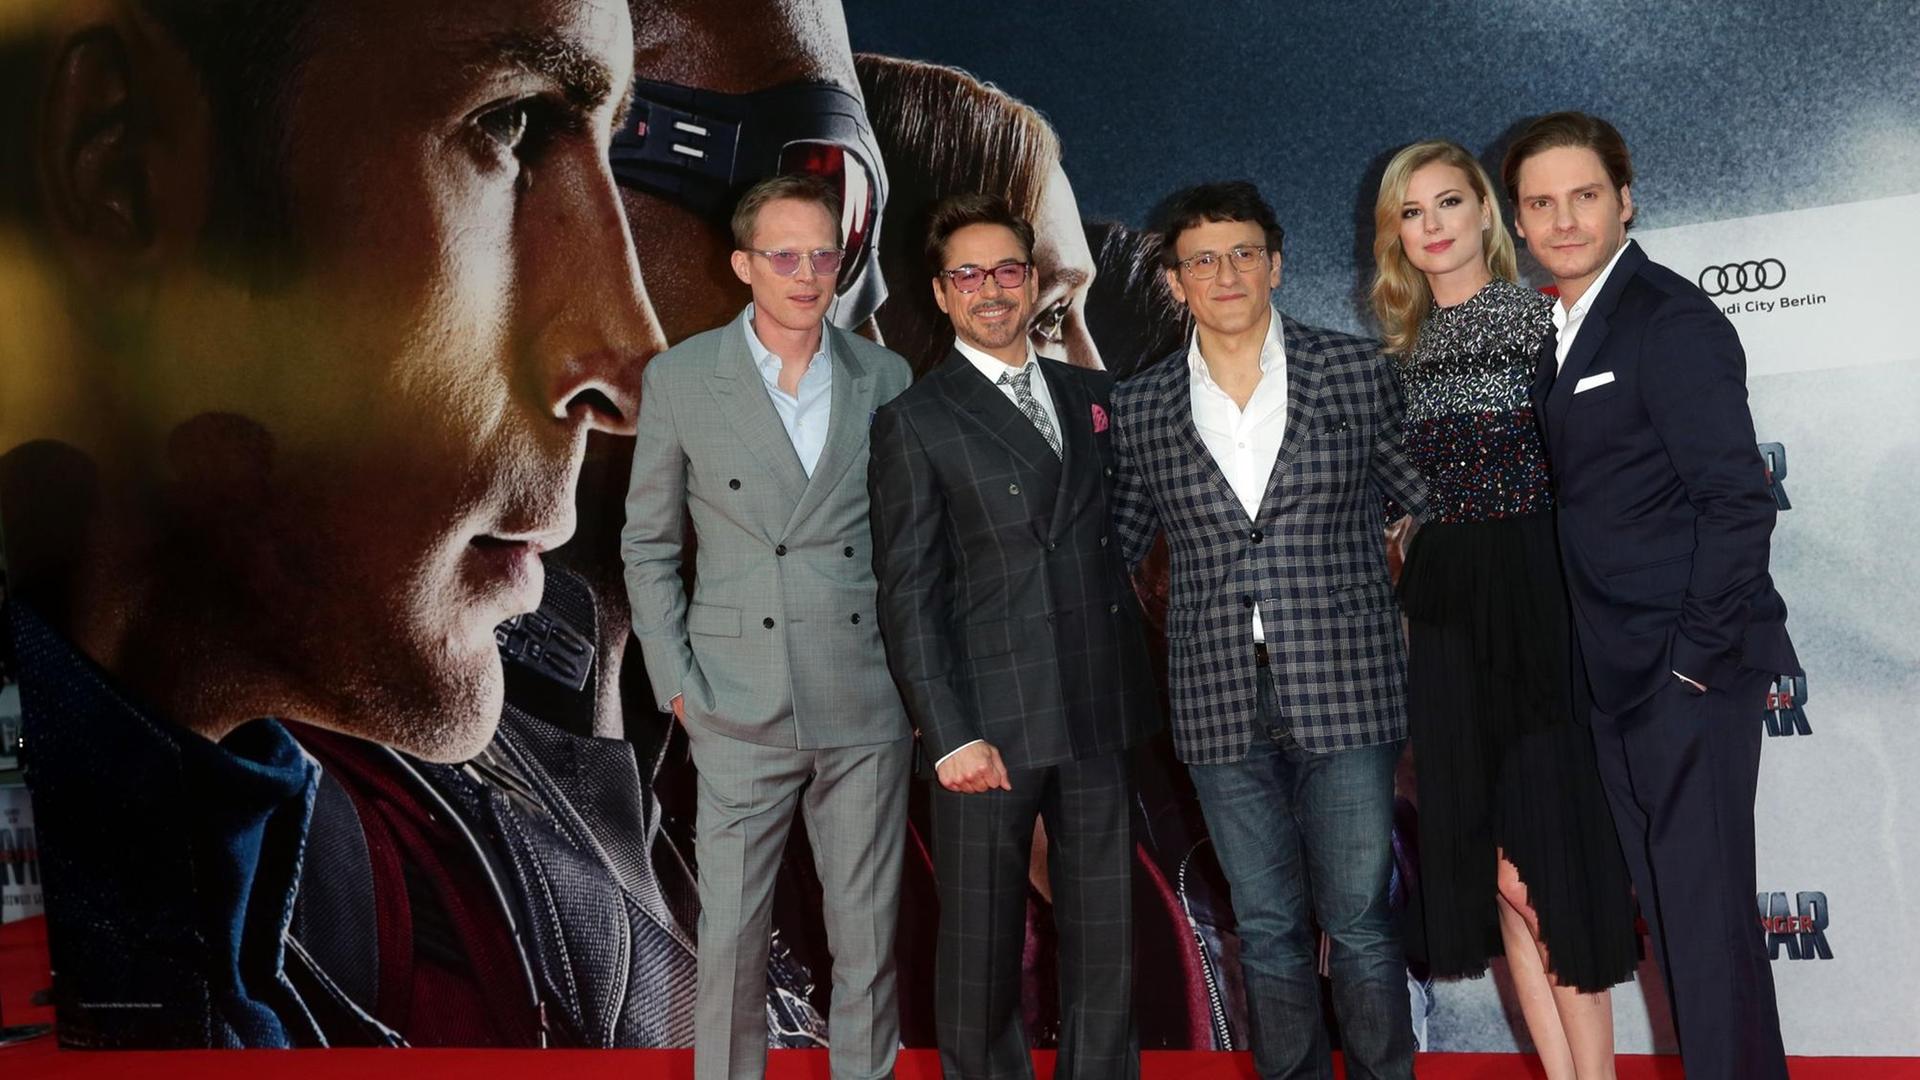 Die Schauspieler Paul Bettany, Robert Downey Jr., Regisseur Anthony Russo, sowie die Schauspieler Emily VanCamp und Daniel Brühl bei der Deutschlandpremiere ihres neuen Films: "The first Avenger: Civil War".